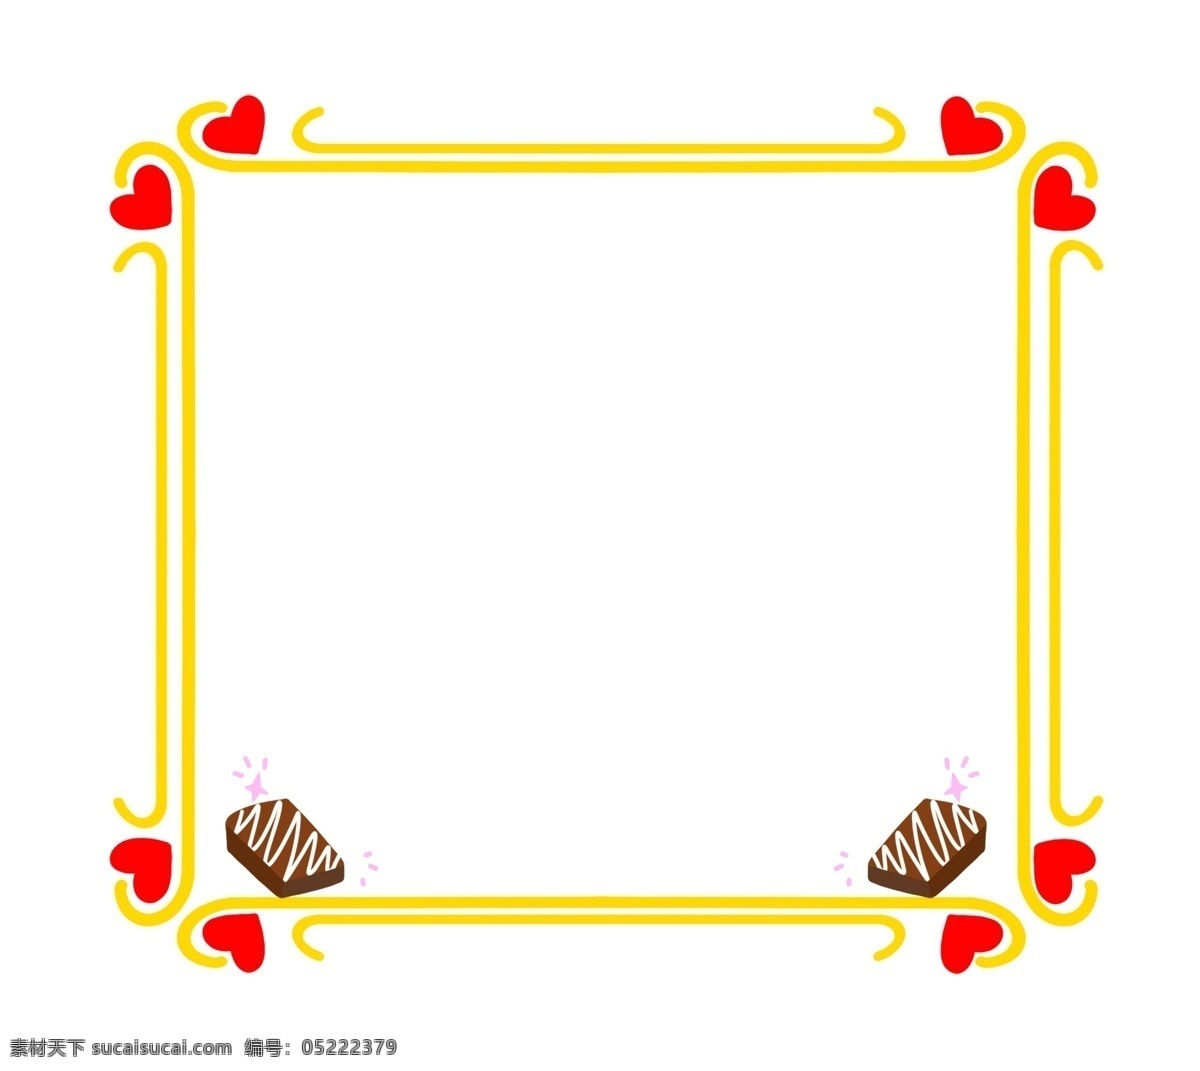 情人节 巧克力 边框 情人节边框 巧克力边框 节日边框 黄色的边框 红色爱心边框 爱情边框装饰